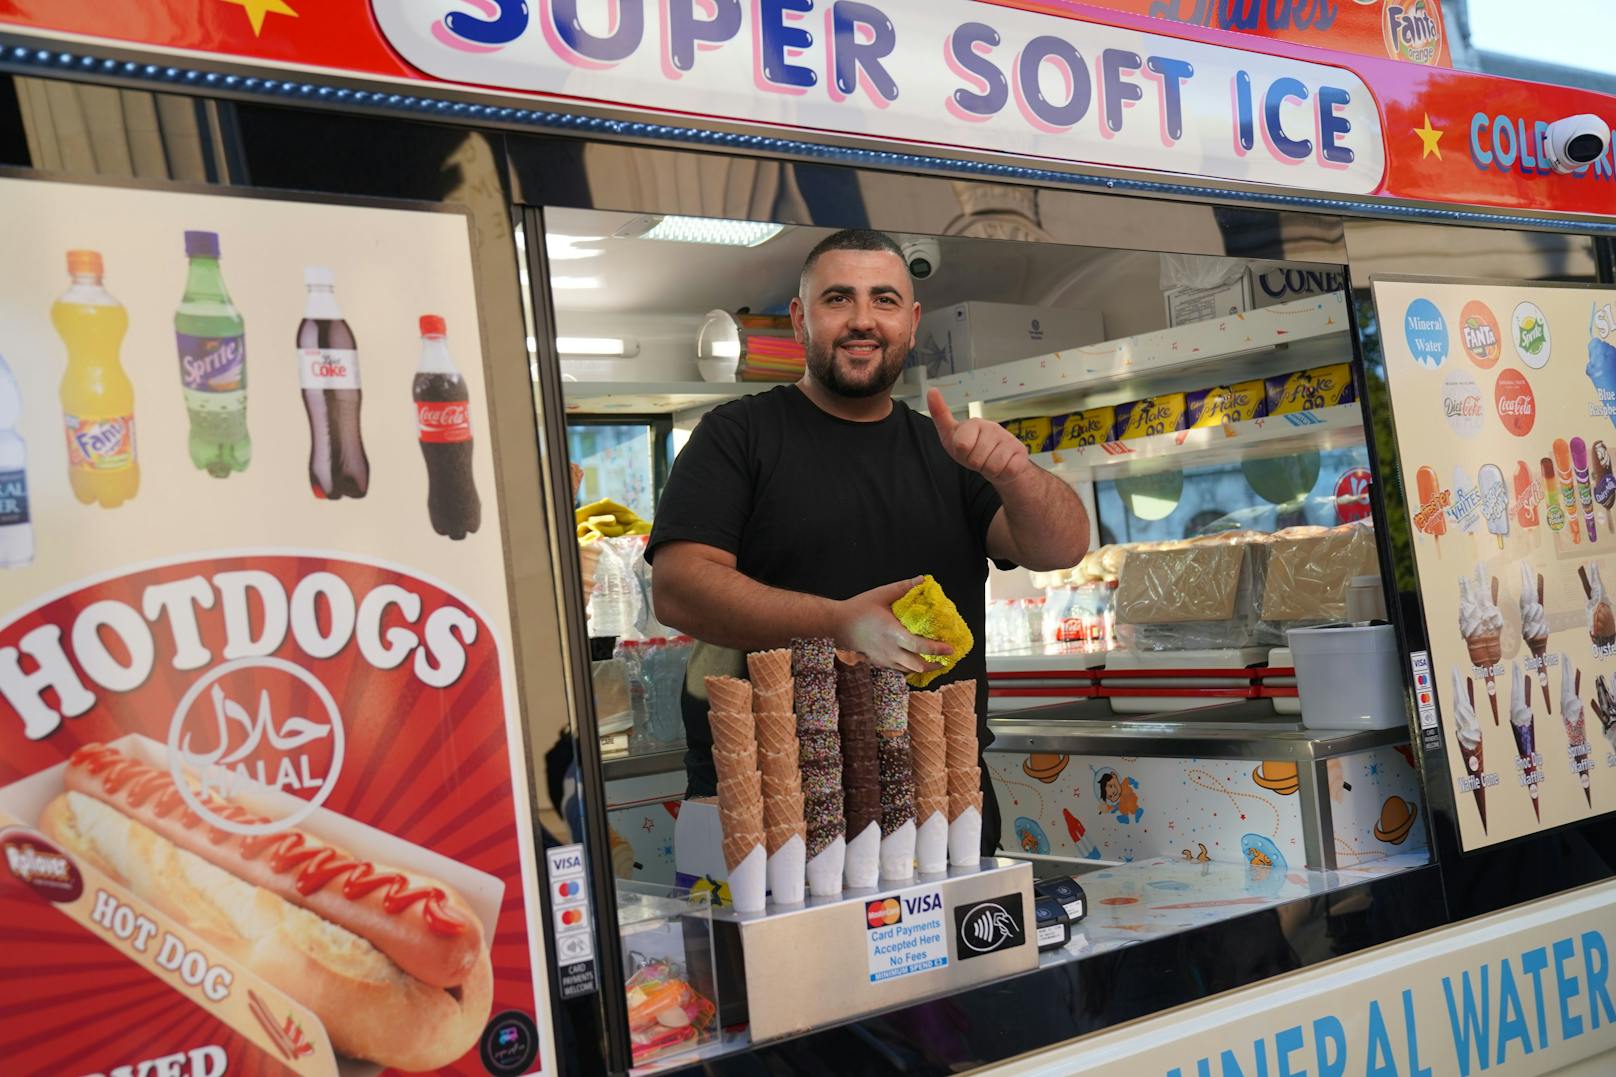 Der Hotdog-Verkäufer macht an diesem Wochenende wohl das Geschäft seines Lebens